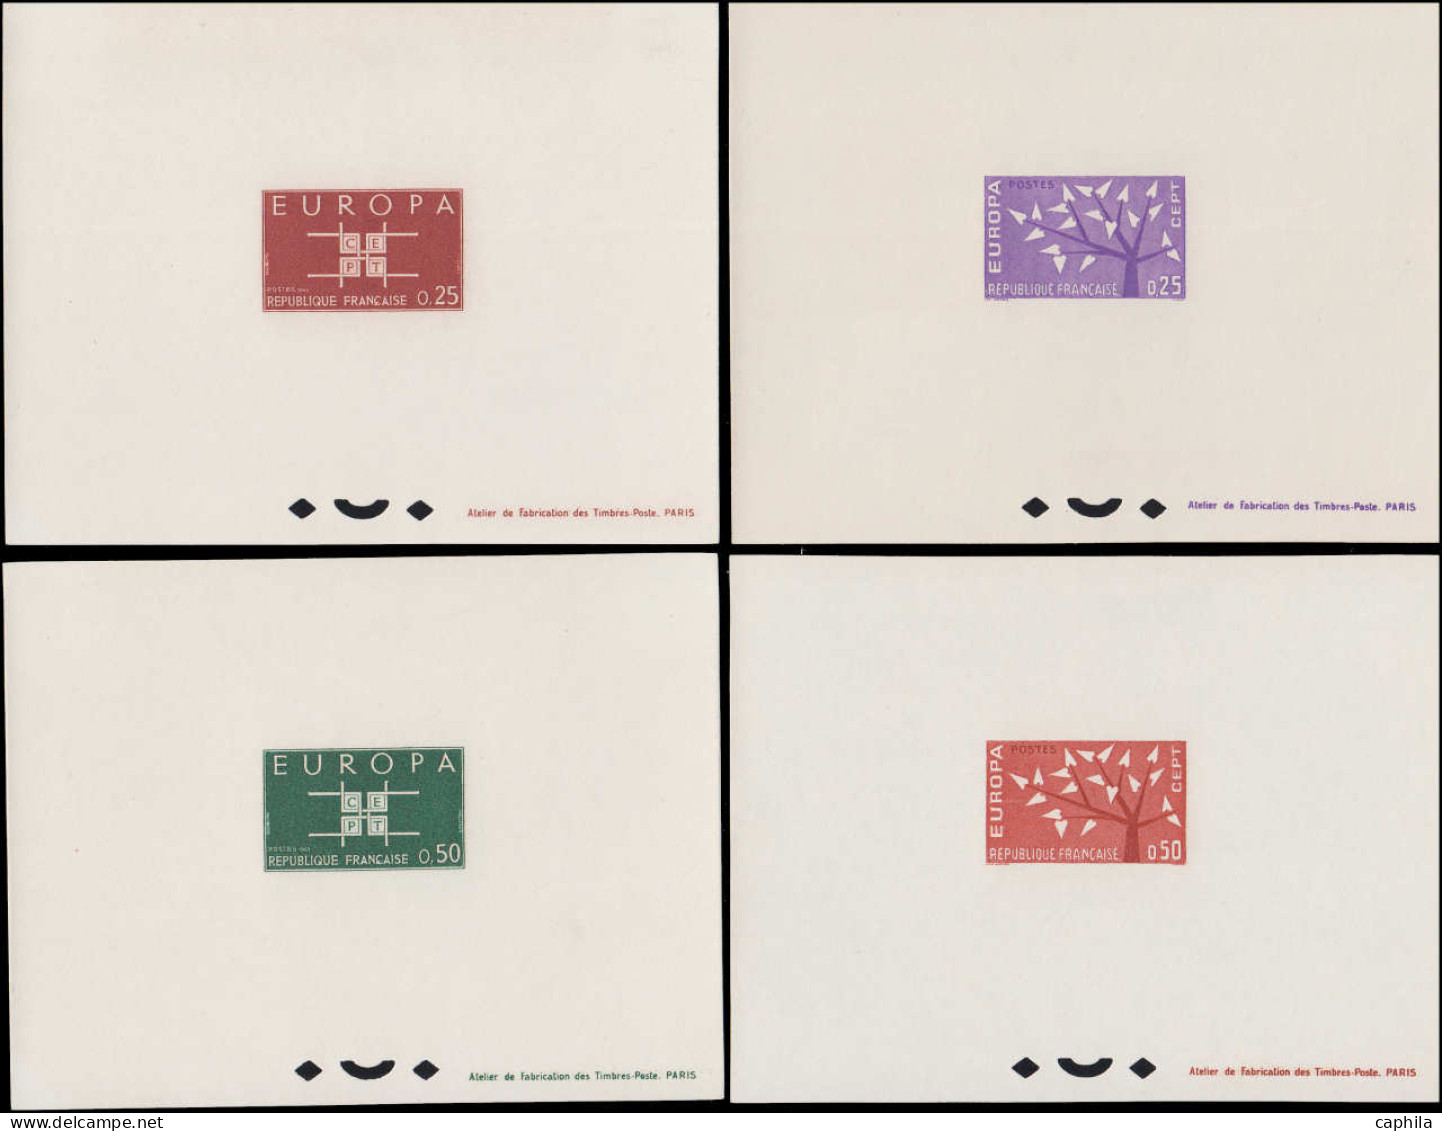 EPL FRANCE - Lots & Collections - 1956, Collection complète Europa France 1956/1996 en épreuves de luxe et blocs gommés